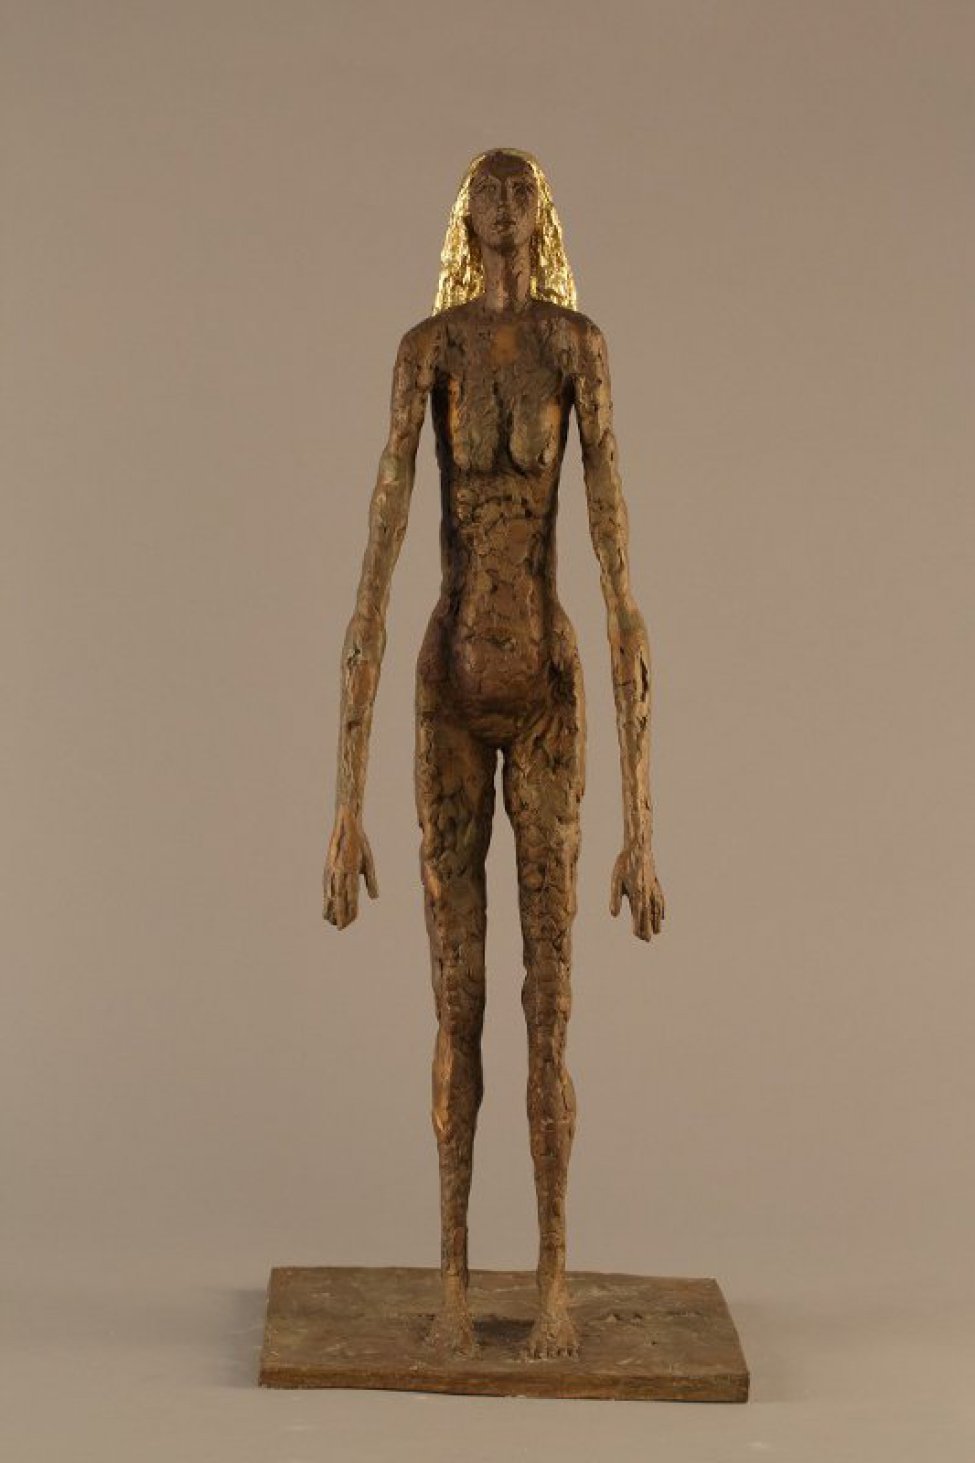 На прямоугольном основании изображена в полный рост стилизованная фигура обнаженной женщины с золотистыми волосами до плеч. Руки опущены и слегка вытянуты вперед, голова слегка поднята вверх. Поверхность скульптуры фактурная, имитирующая лепку из пластилина.